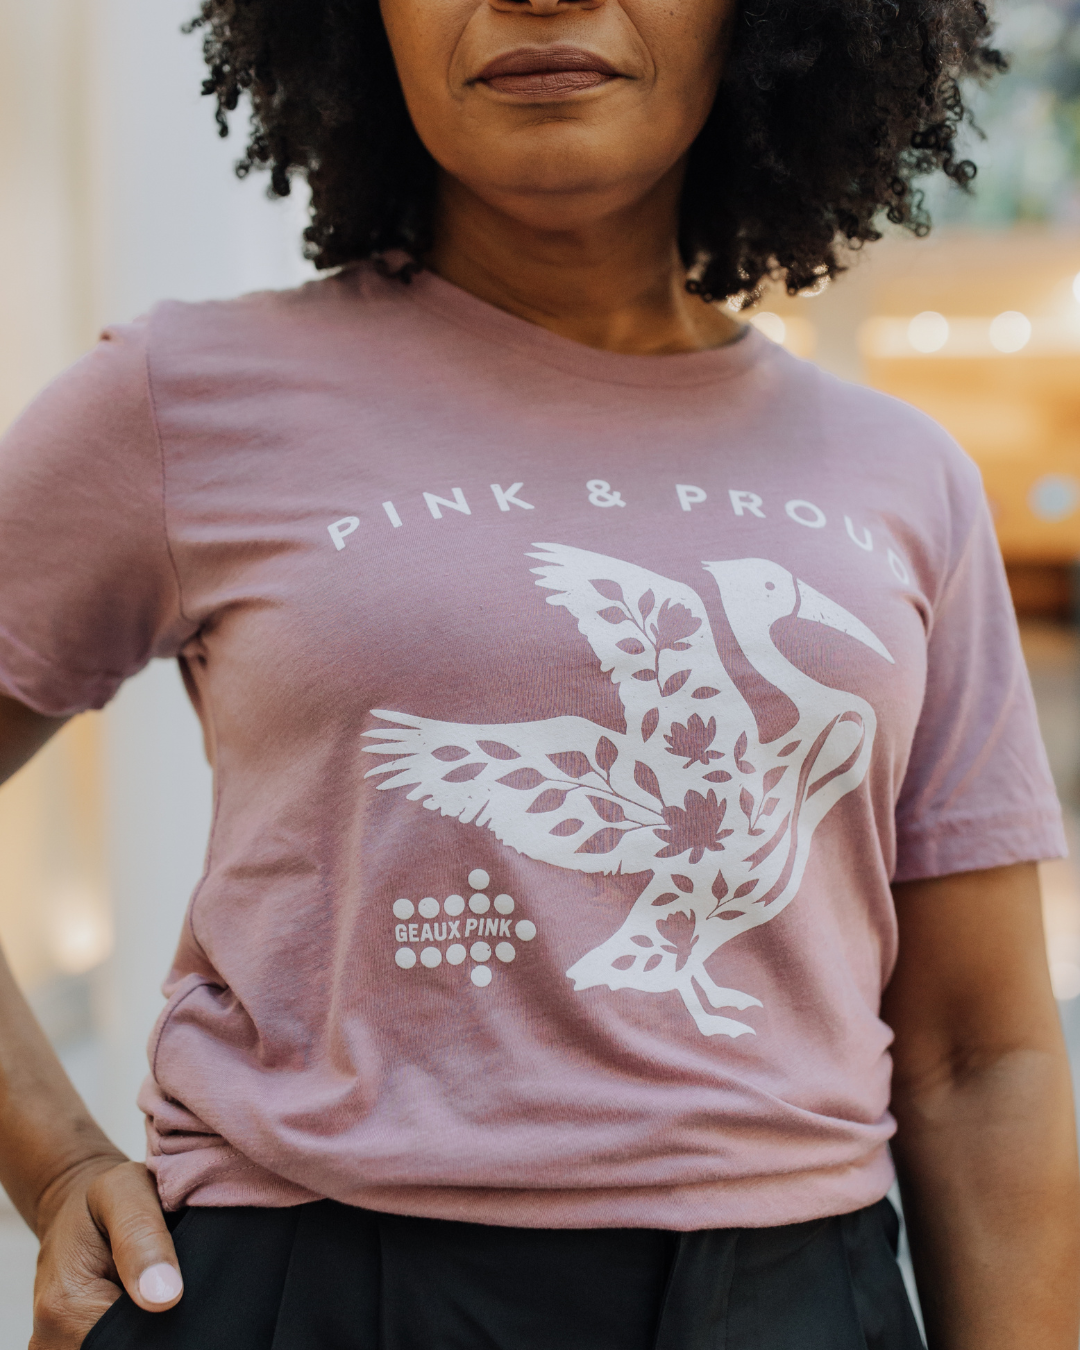 Pink & Proud Pelican |  Geaux Pink